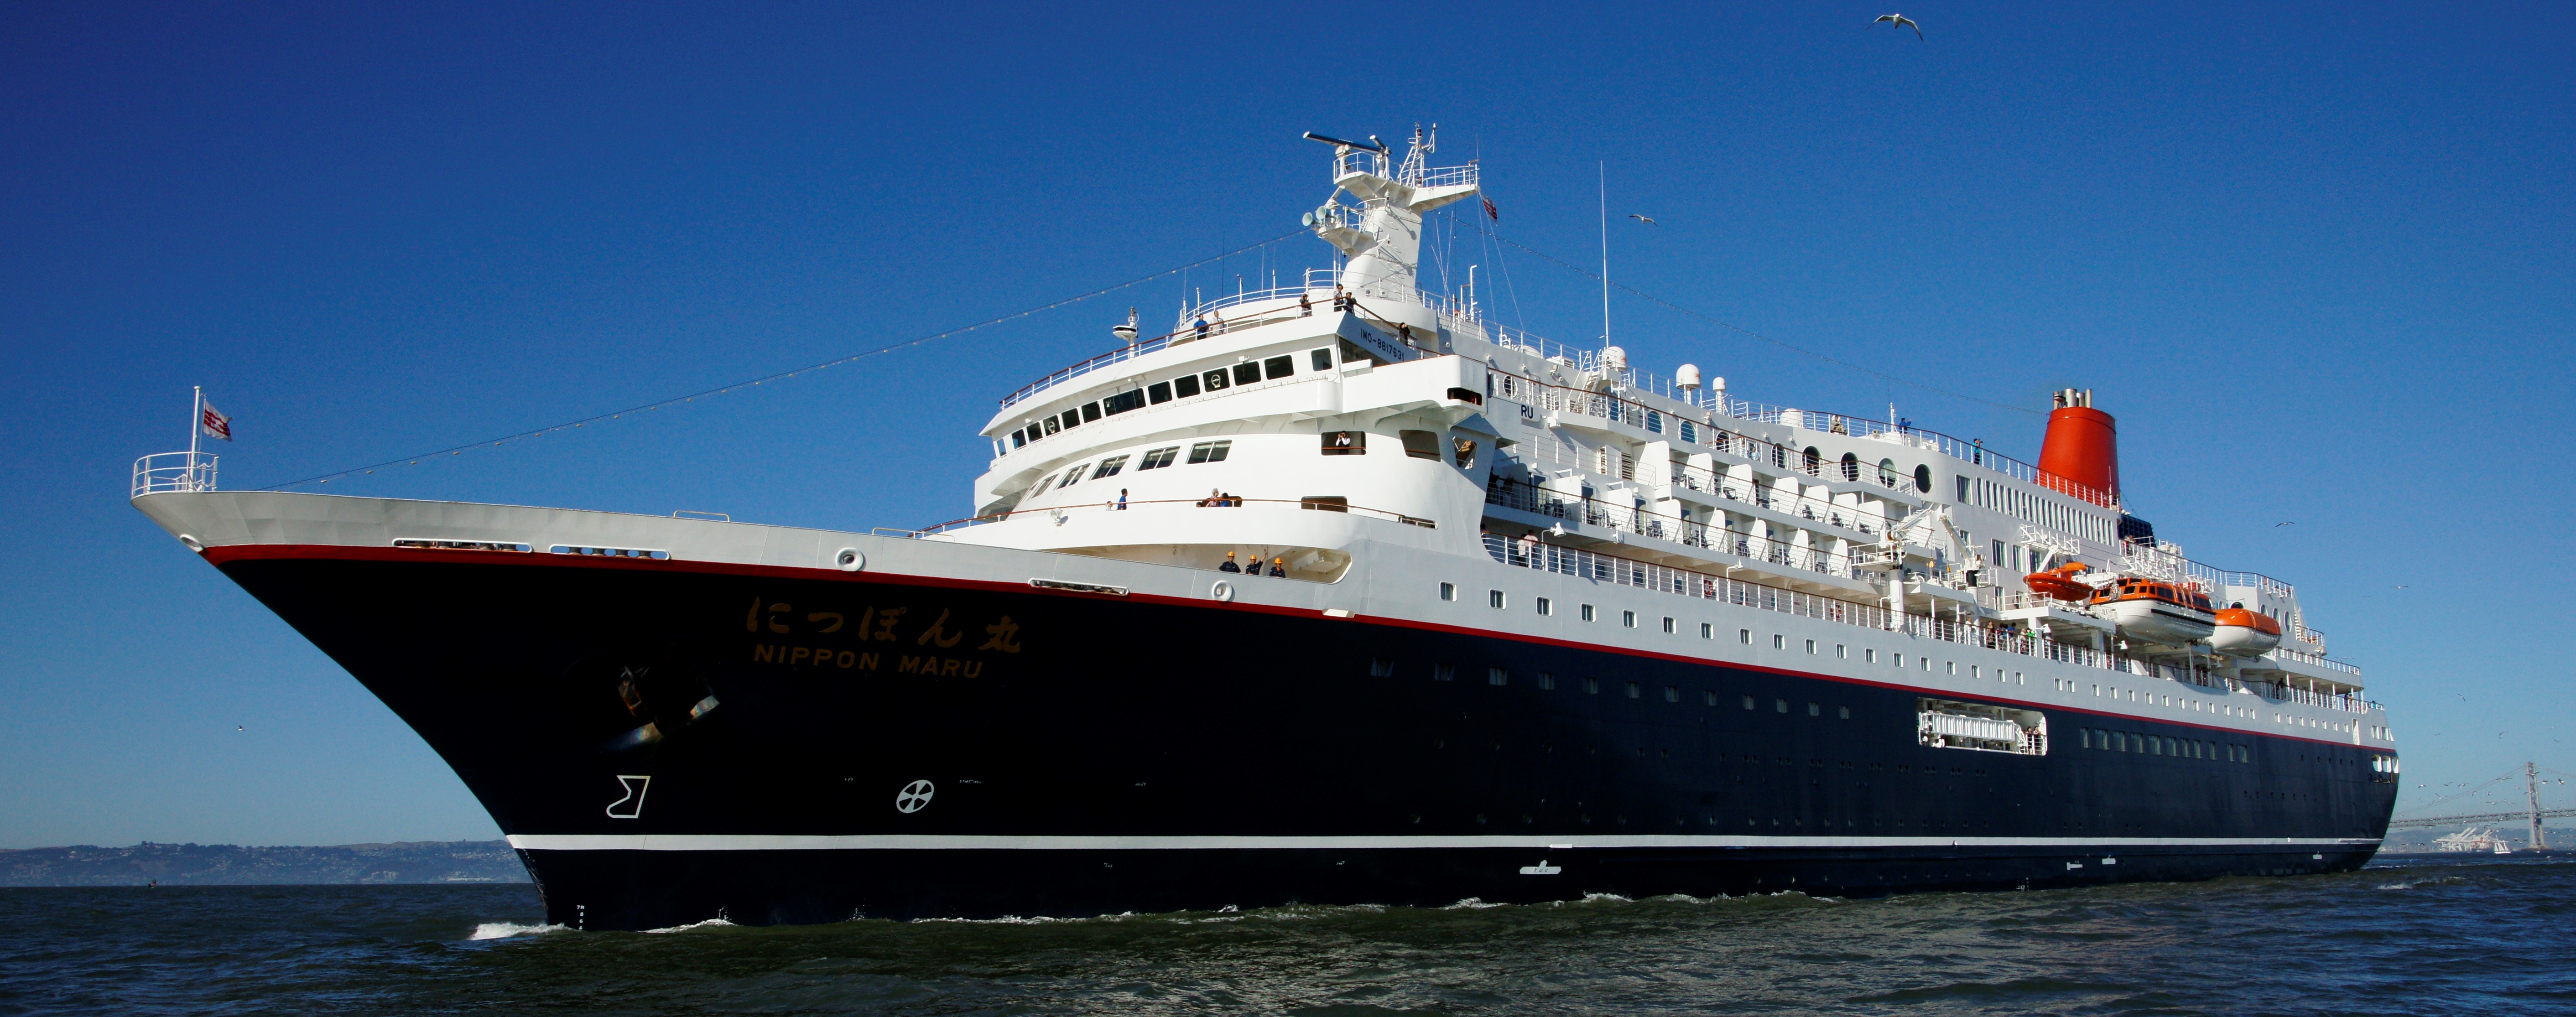 新潟港から豪華客船にっぽん丸が、6月12日発初夏の北海道4日間クルーズを運航・釧路と白老めぐります。